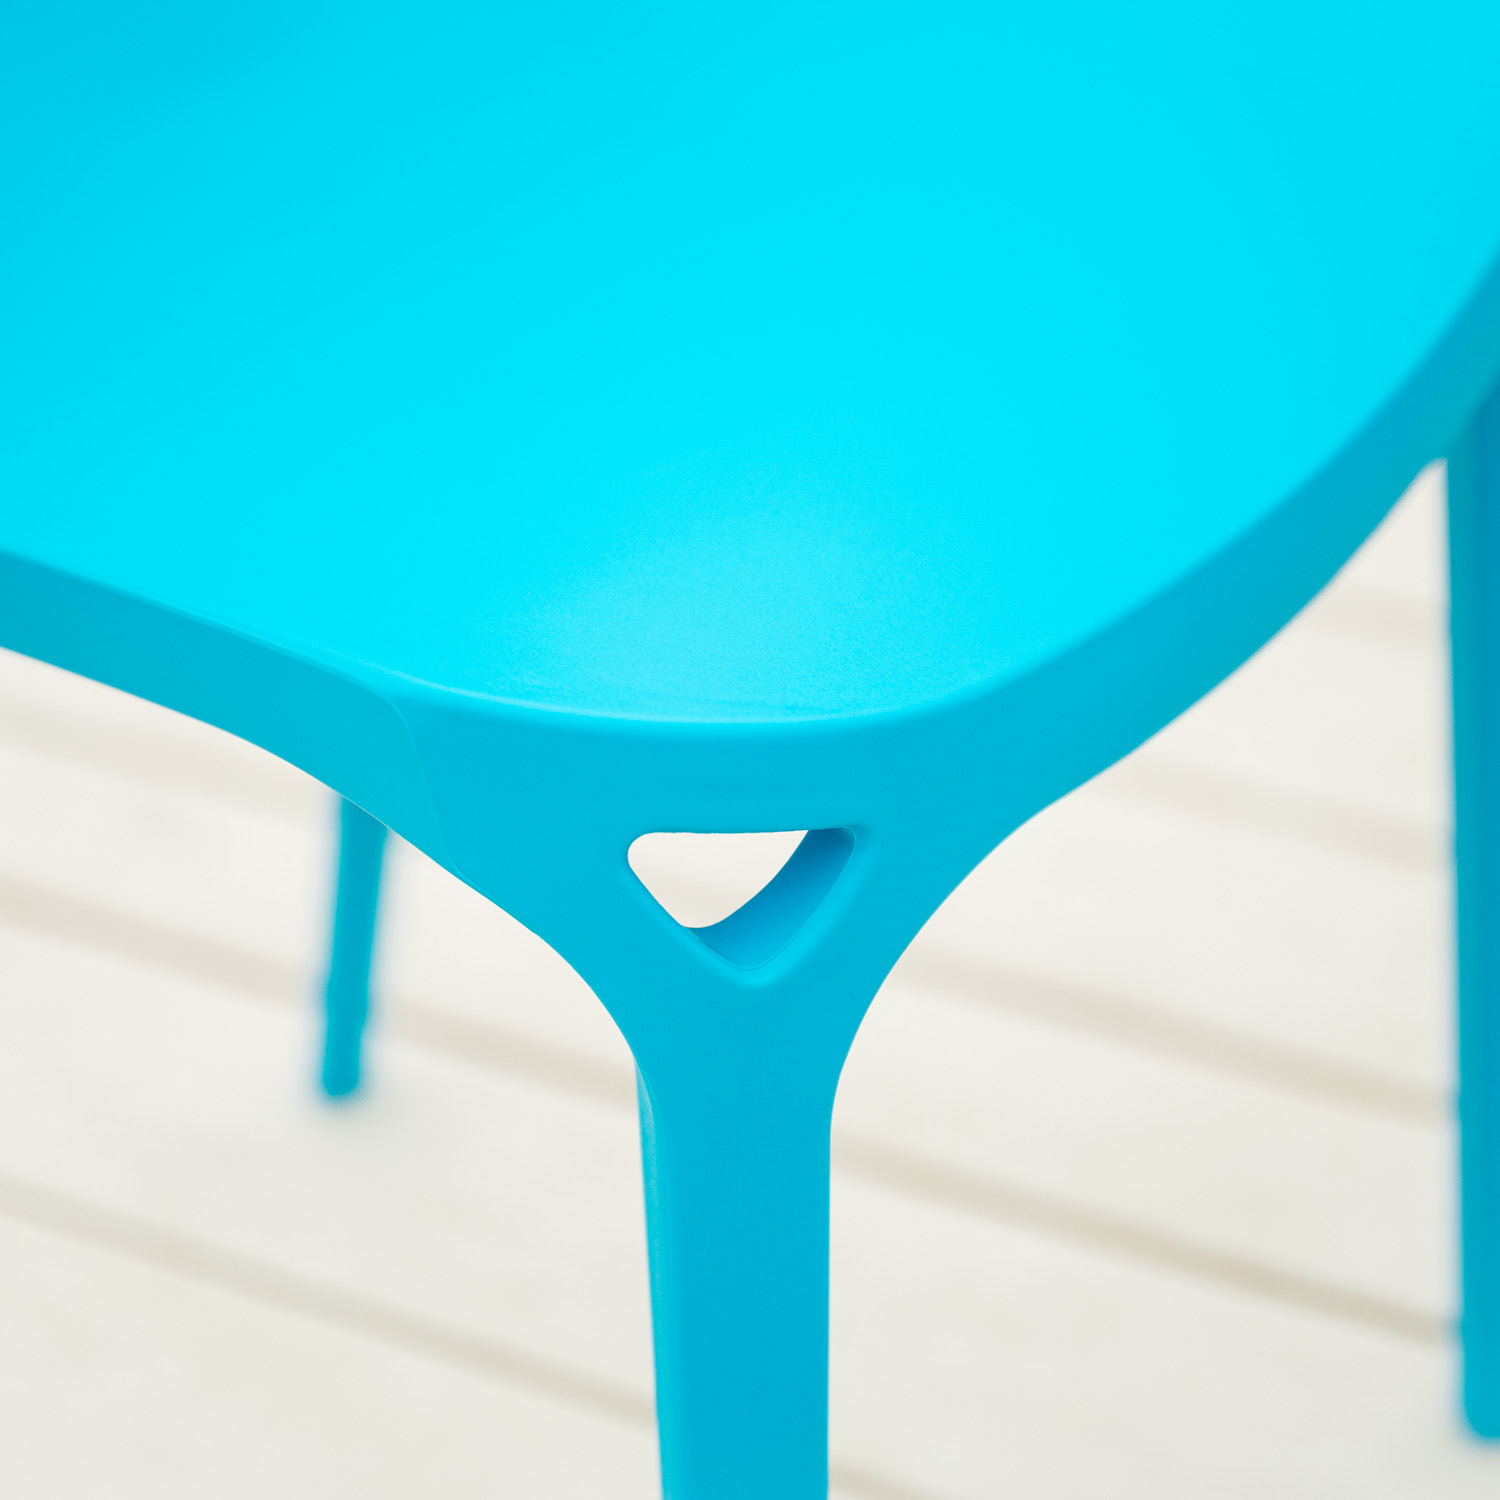 Chaise de jardin Lot de 2 Moderne Bleu Chaises design Plastique Chaises exterieur Chaises empilable Chaise de cuisine